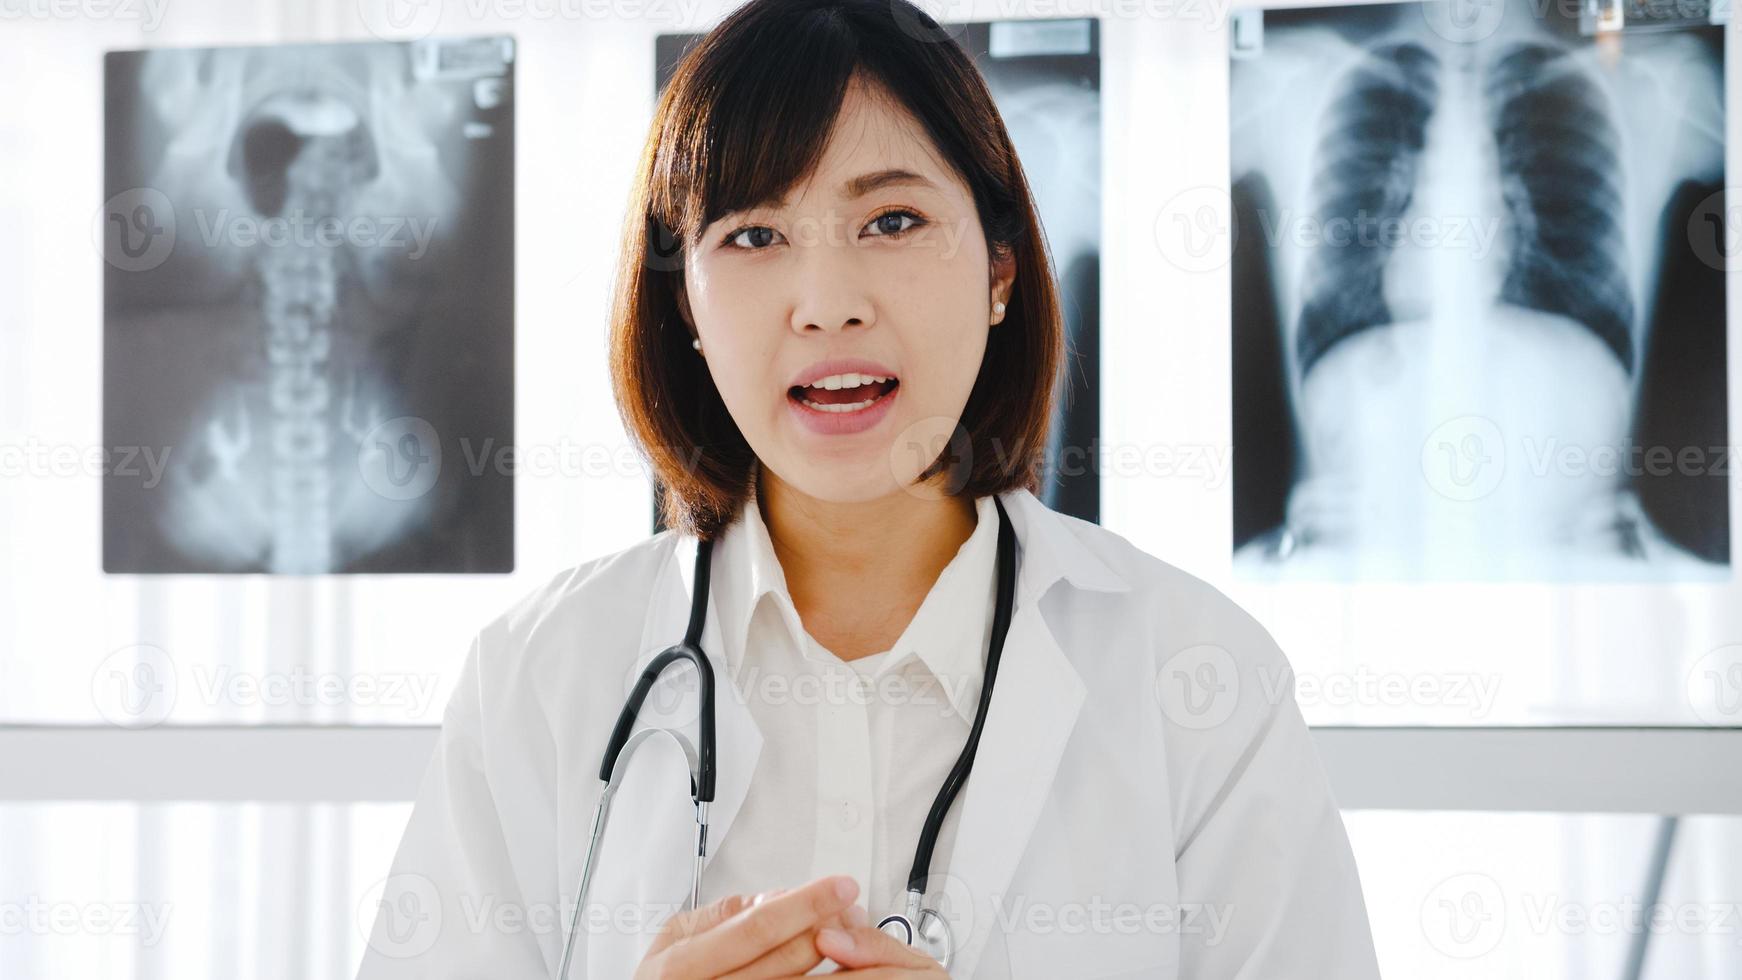 giovane dottoressa asiatica in uniforme medica bianca con stetoscopio utilizzando computer portatile parlare in videoconferenza con il paziente, guardando la fotocamera in ospedale sanitario. concetto di consulenza e terapia. foto